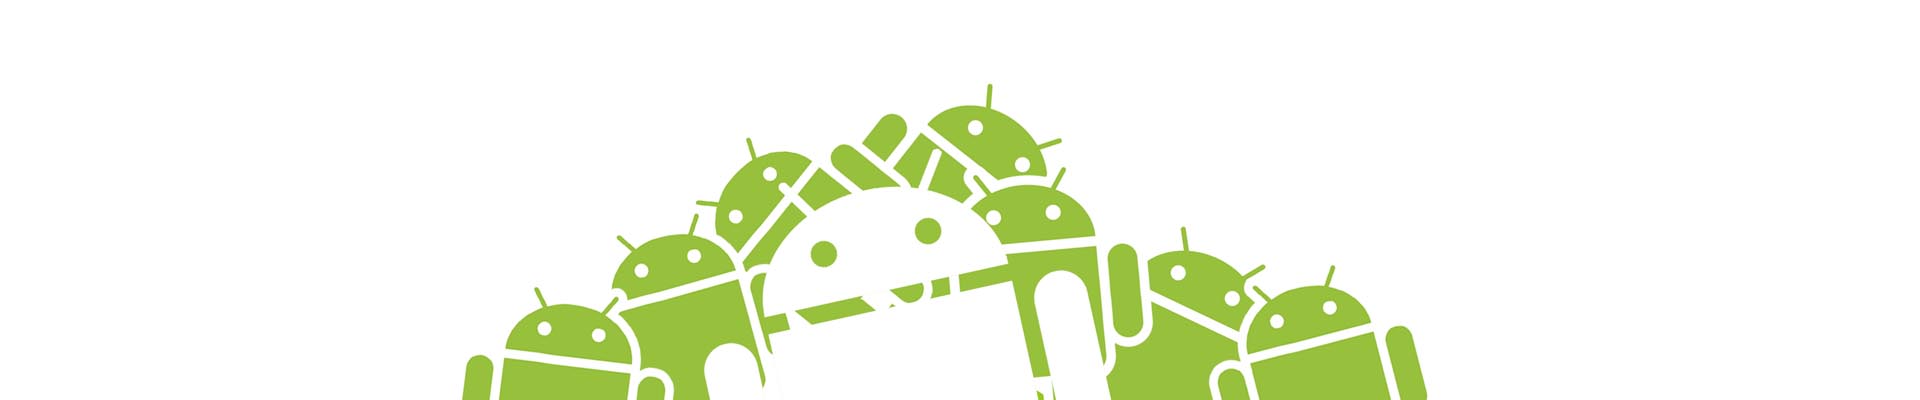 Android Appication development company Impulse Technosoft Nashik India